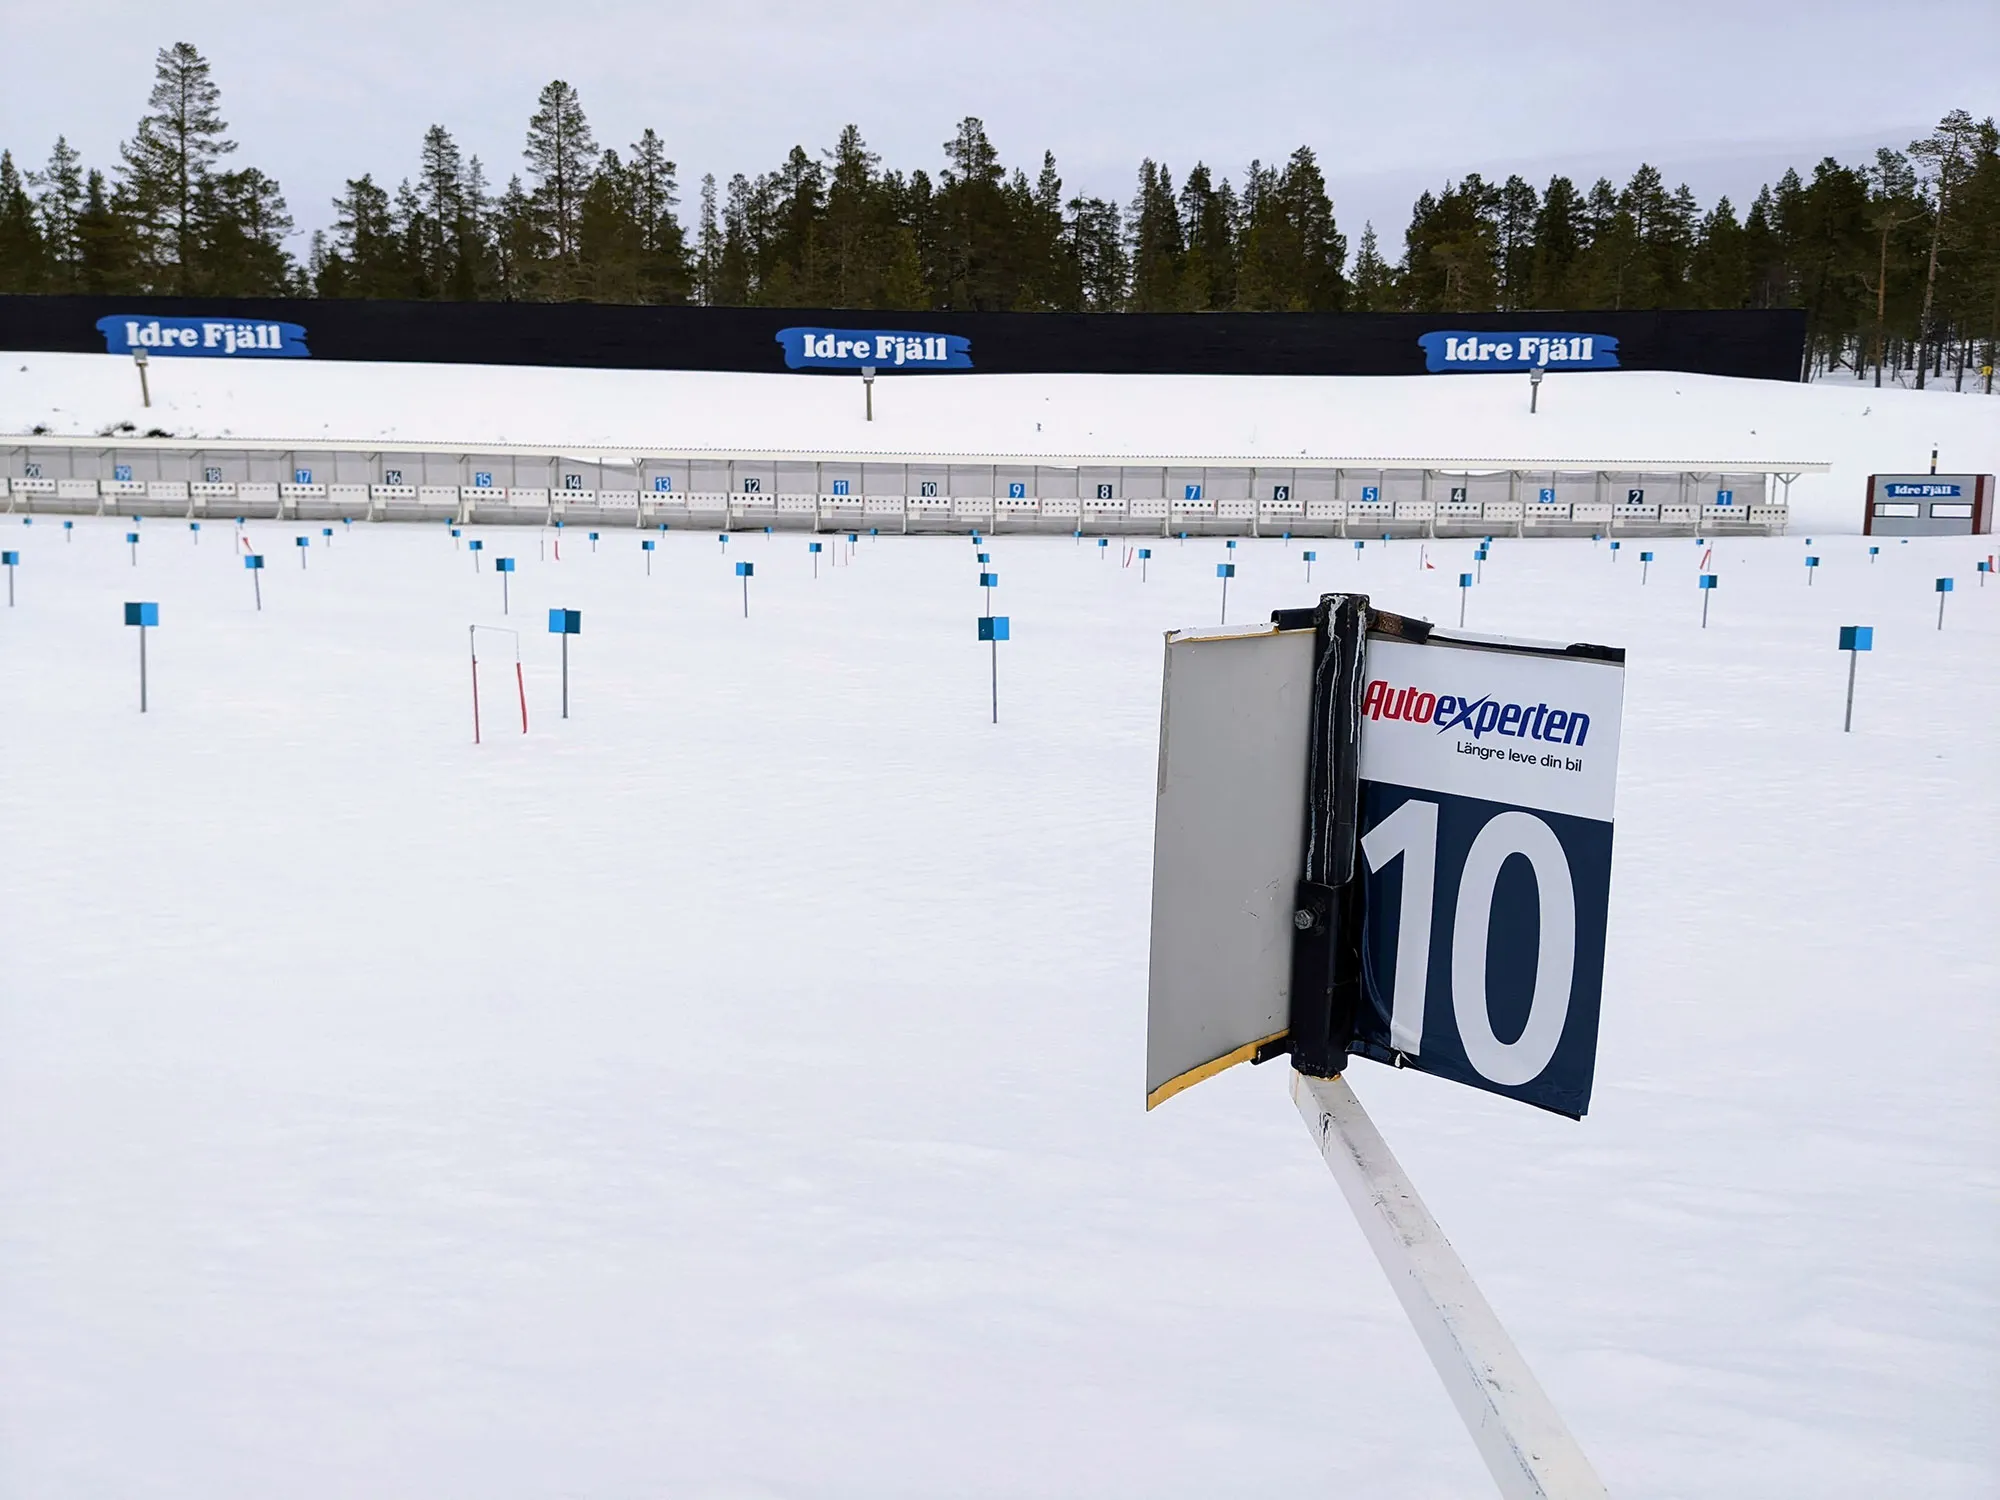 Biathlon-Schießanlage Idre Fjäll